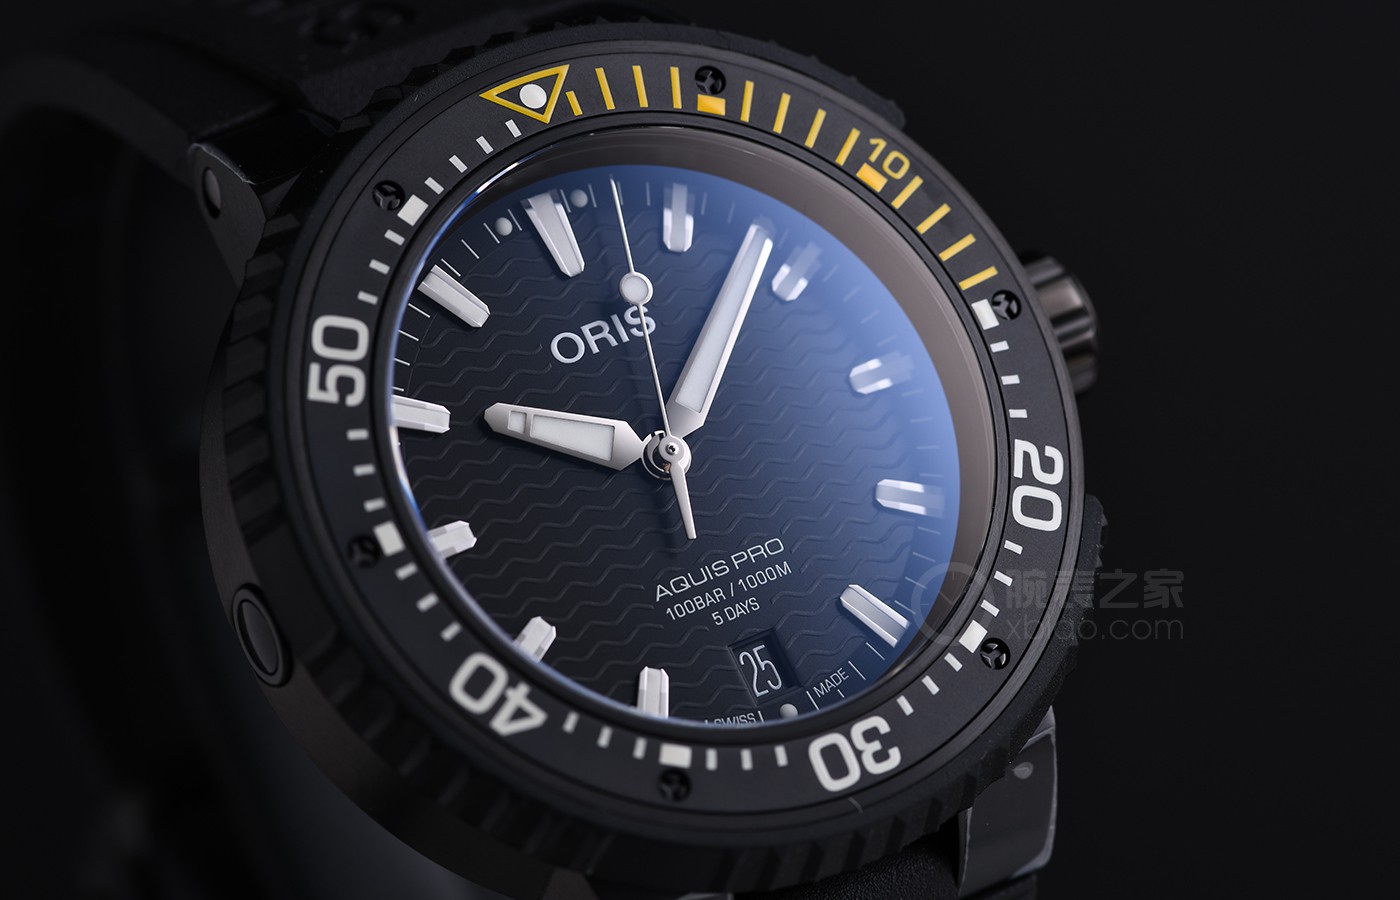 为专业潜水设计 品鉴豪利时AquisPro 400自主机芯日历腕表